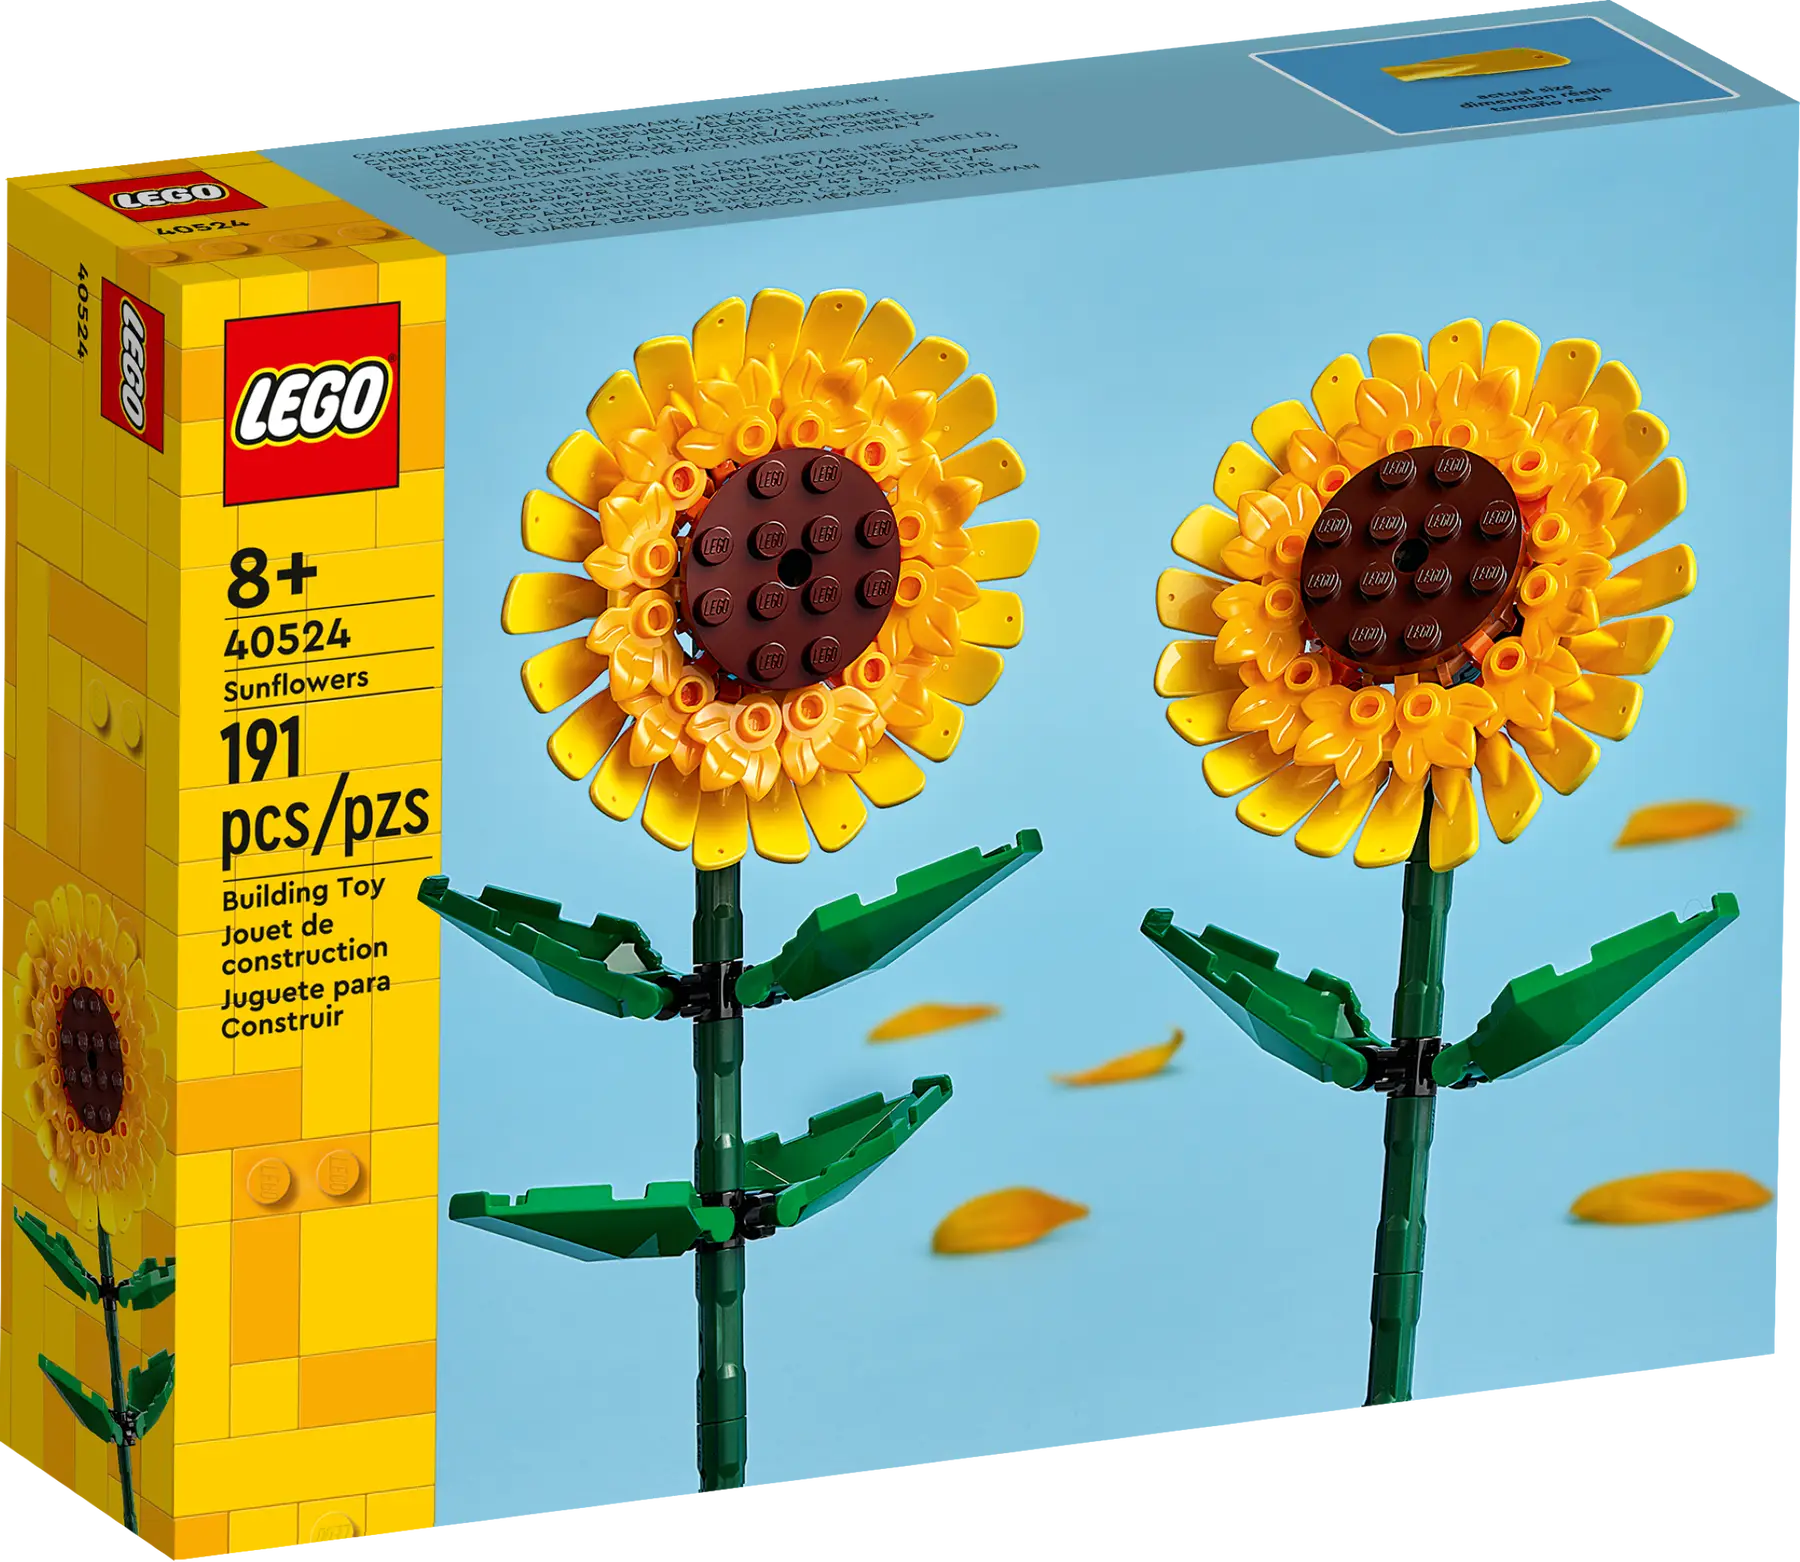 LEGO Iconic Ayçiçeği 40524